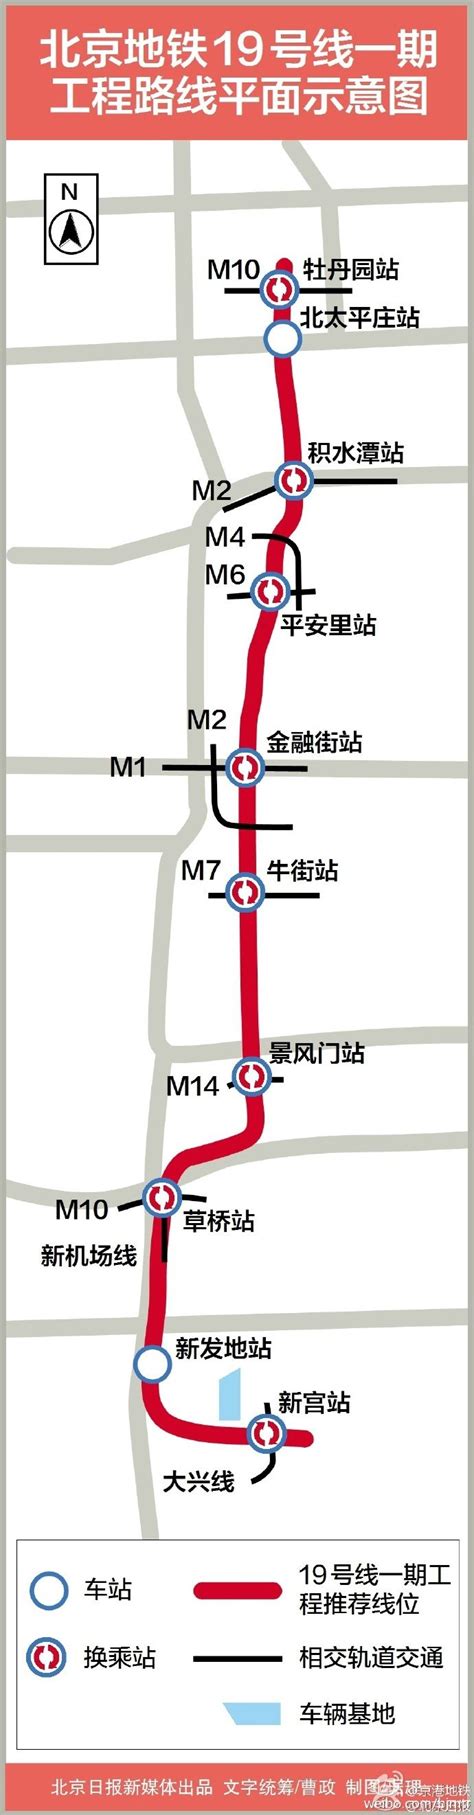 北京地铁19号线一期有哪些站点及在哪站换乘(平面示意图)- 北京本地宝